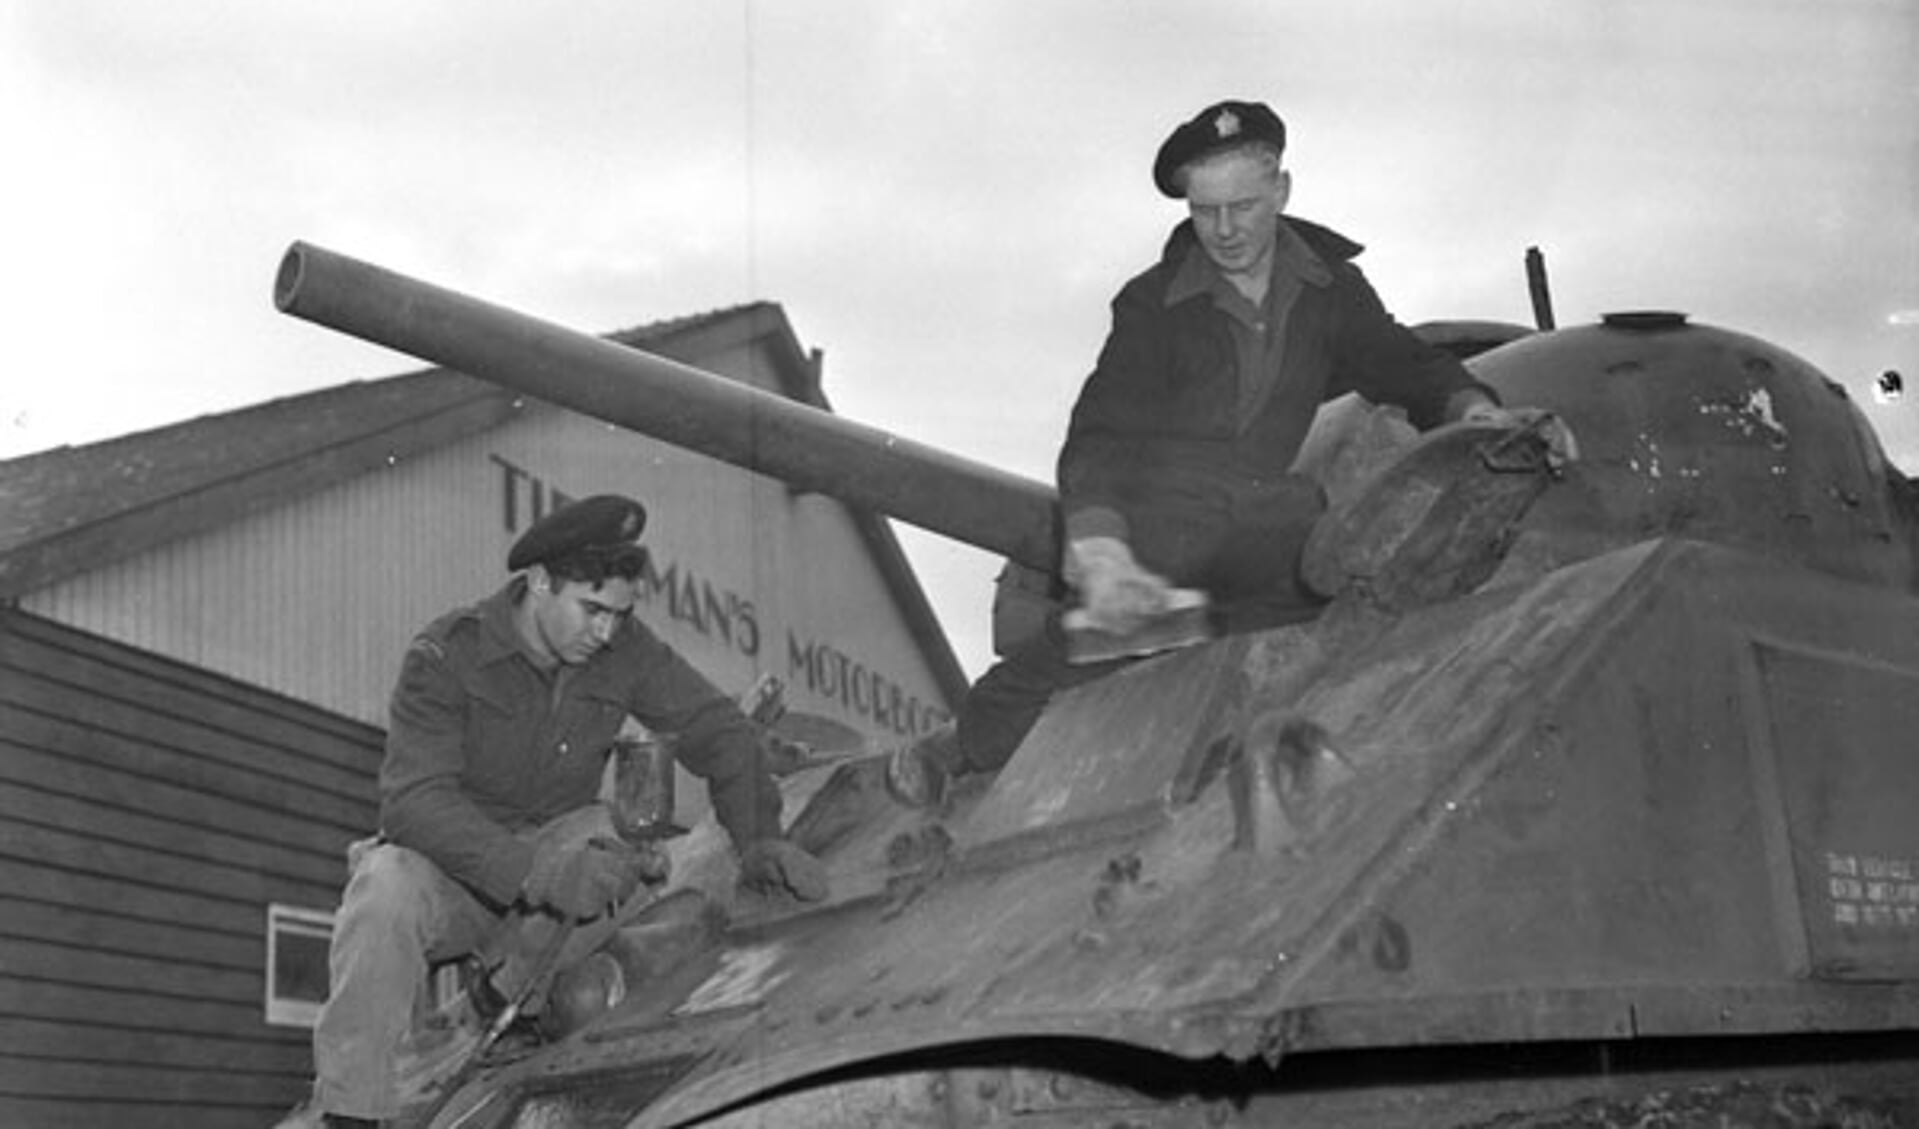 Soldaten poetsen de Sherman M4A4 tank, voor de werkplaats van Tieleman op 22 november 1945. Deze tank staat nu aan de Torontostraat in Doetinchem (Foto: Collectionscanada)